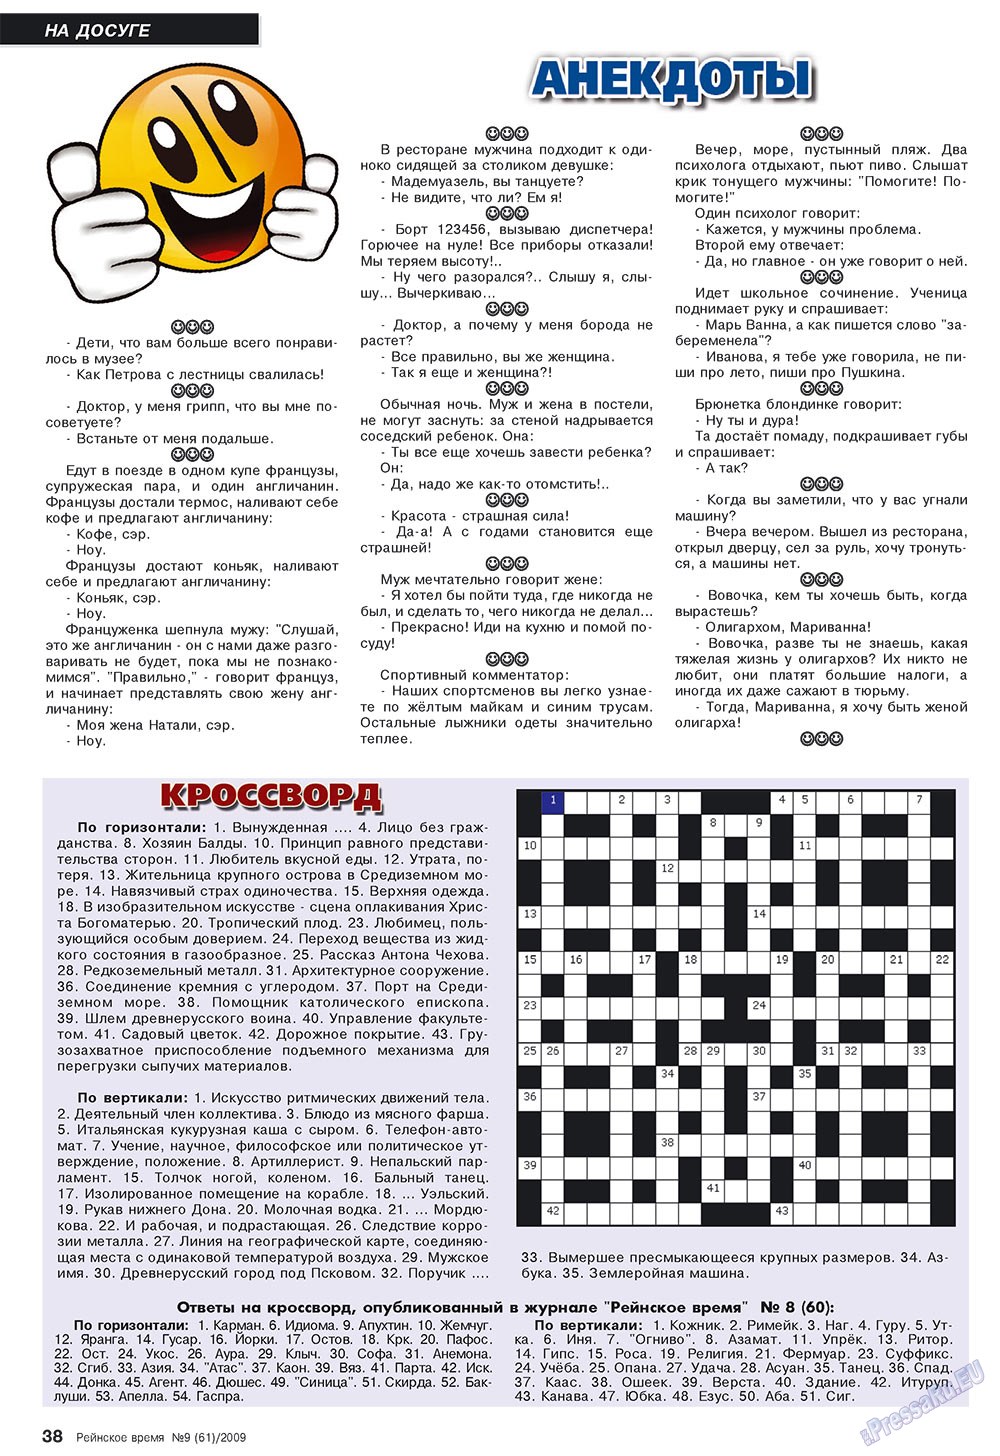 Рейнское время, журнал. 2009 №9 стр.38